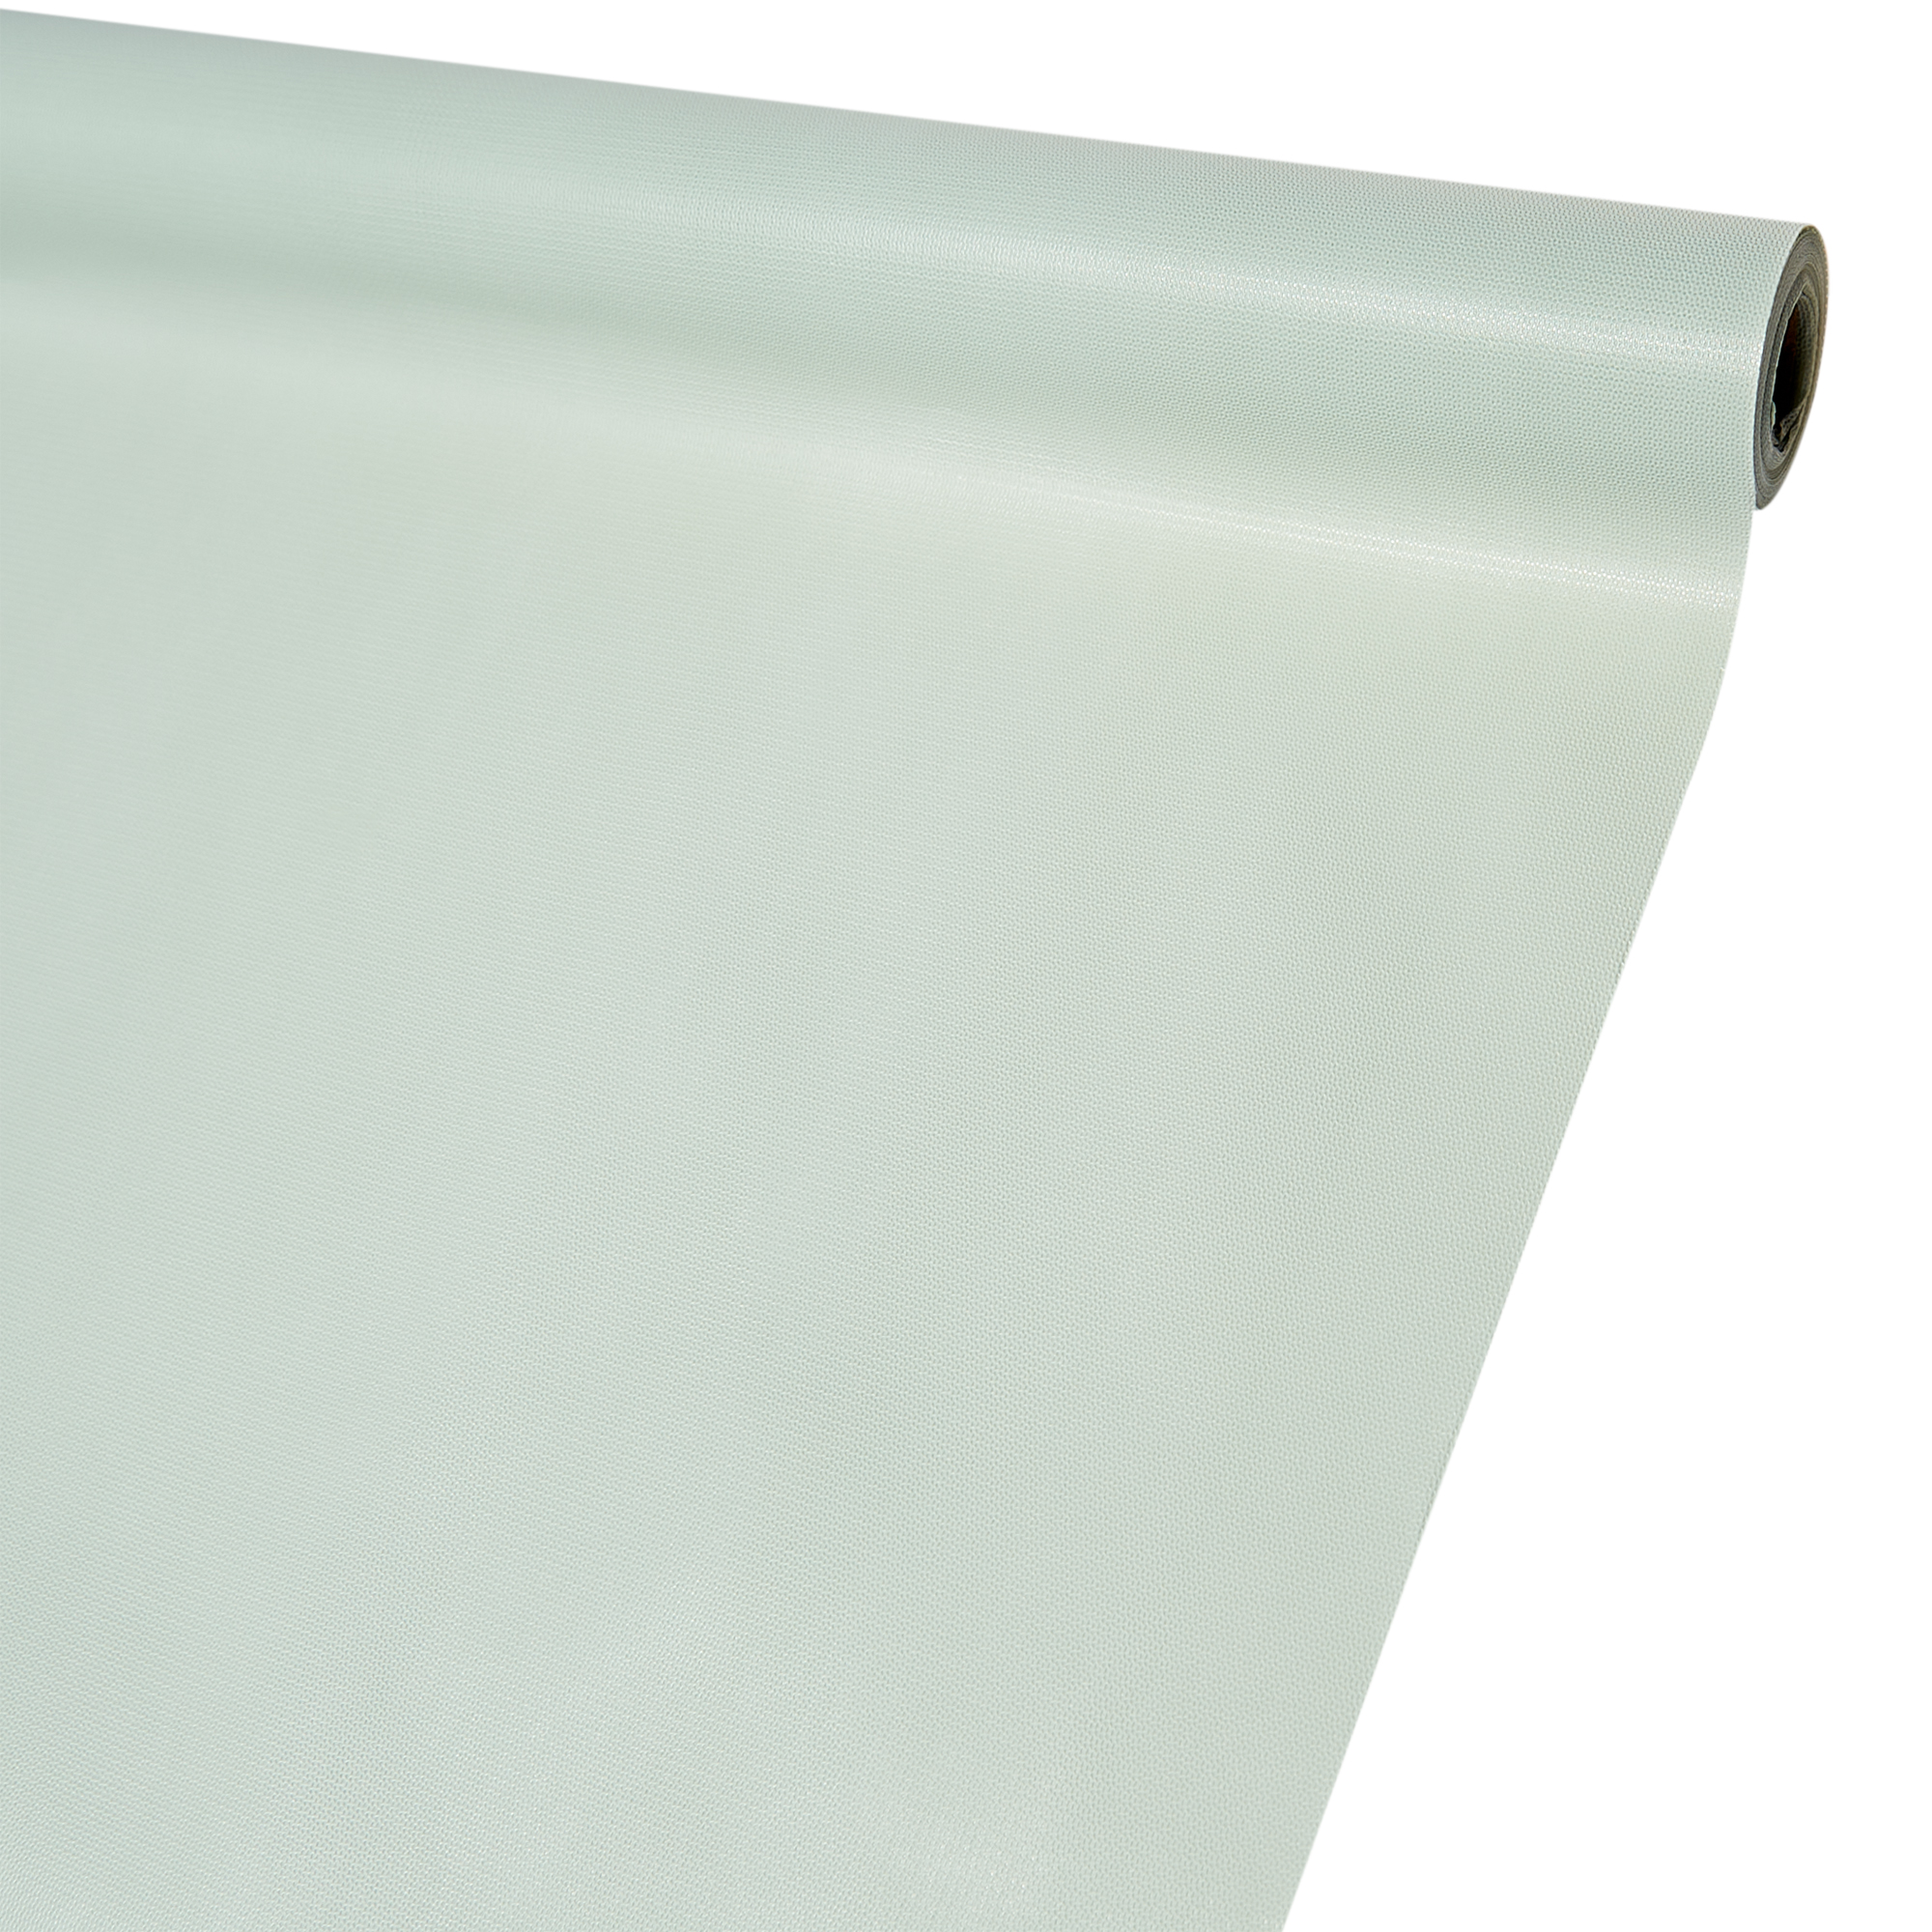 Упаковочный материал "Латексная плёнка", 60см*5м, цв. пастельный зеленый, 4630116584475